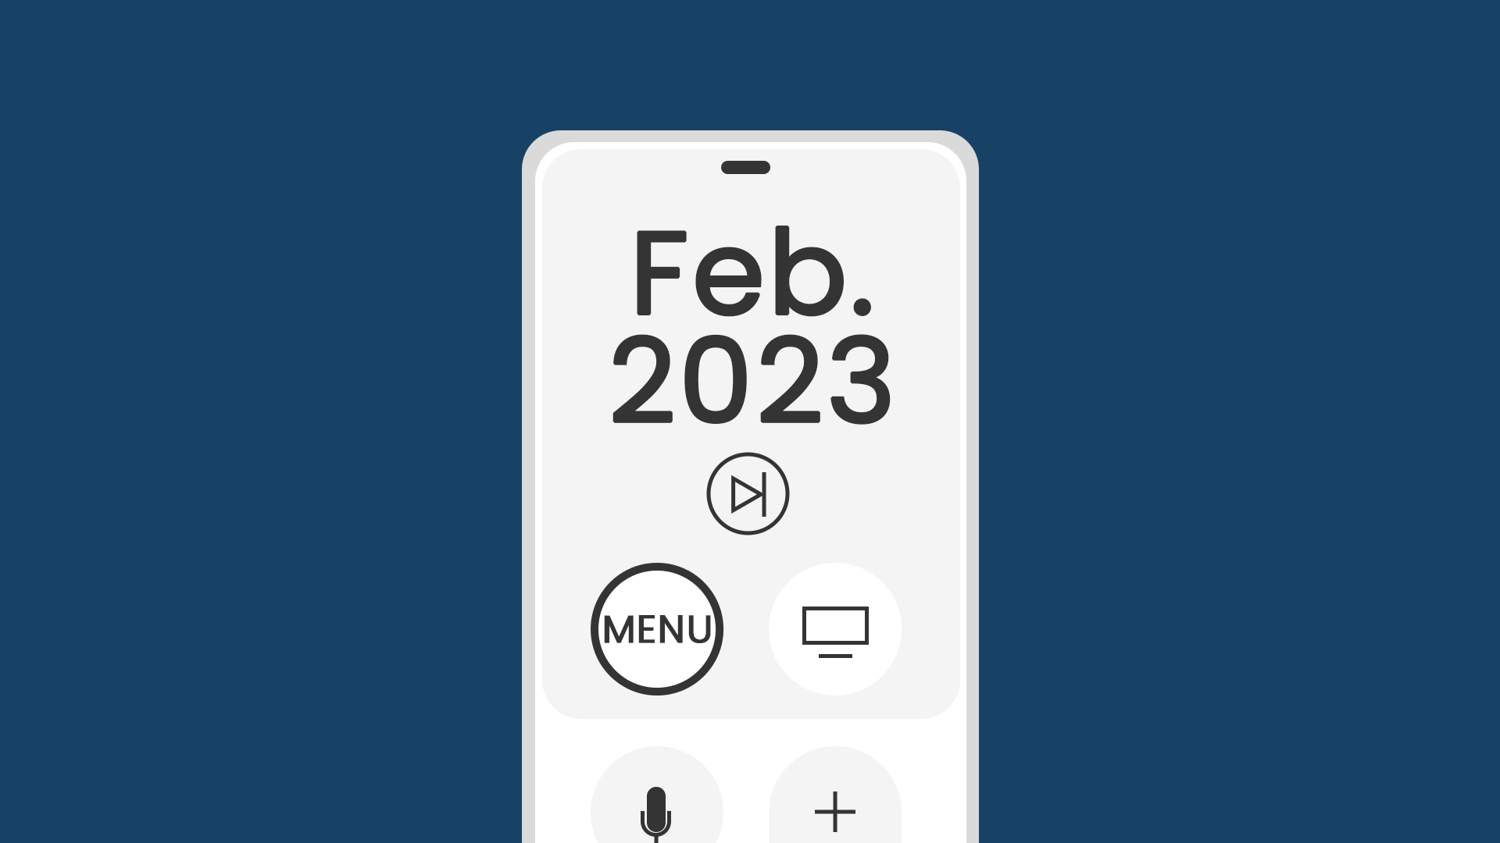 Что посмотреть в феврале 2023 года?